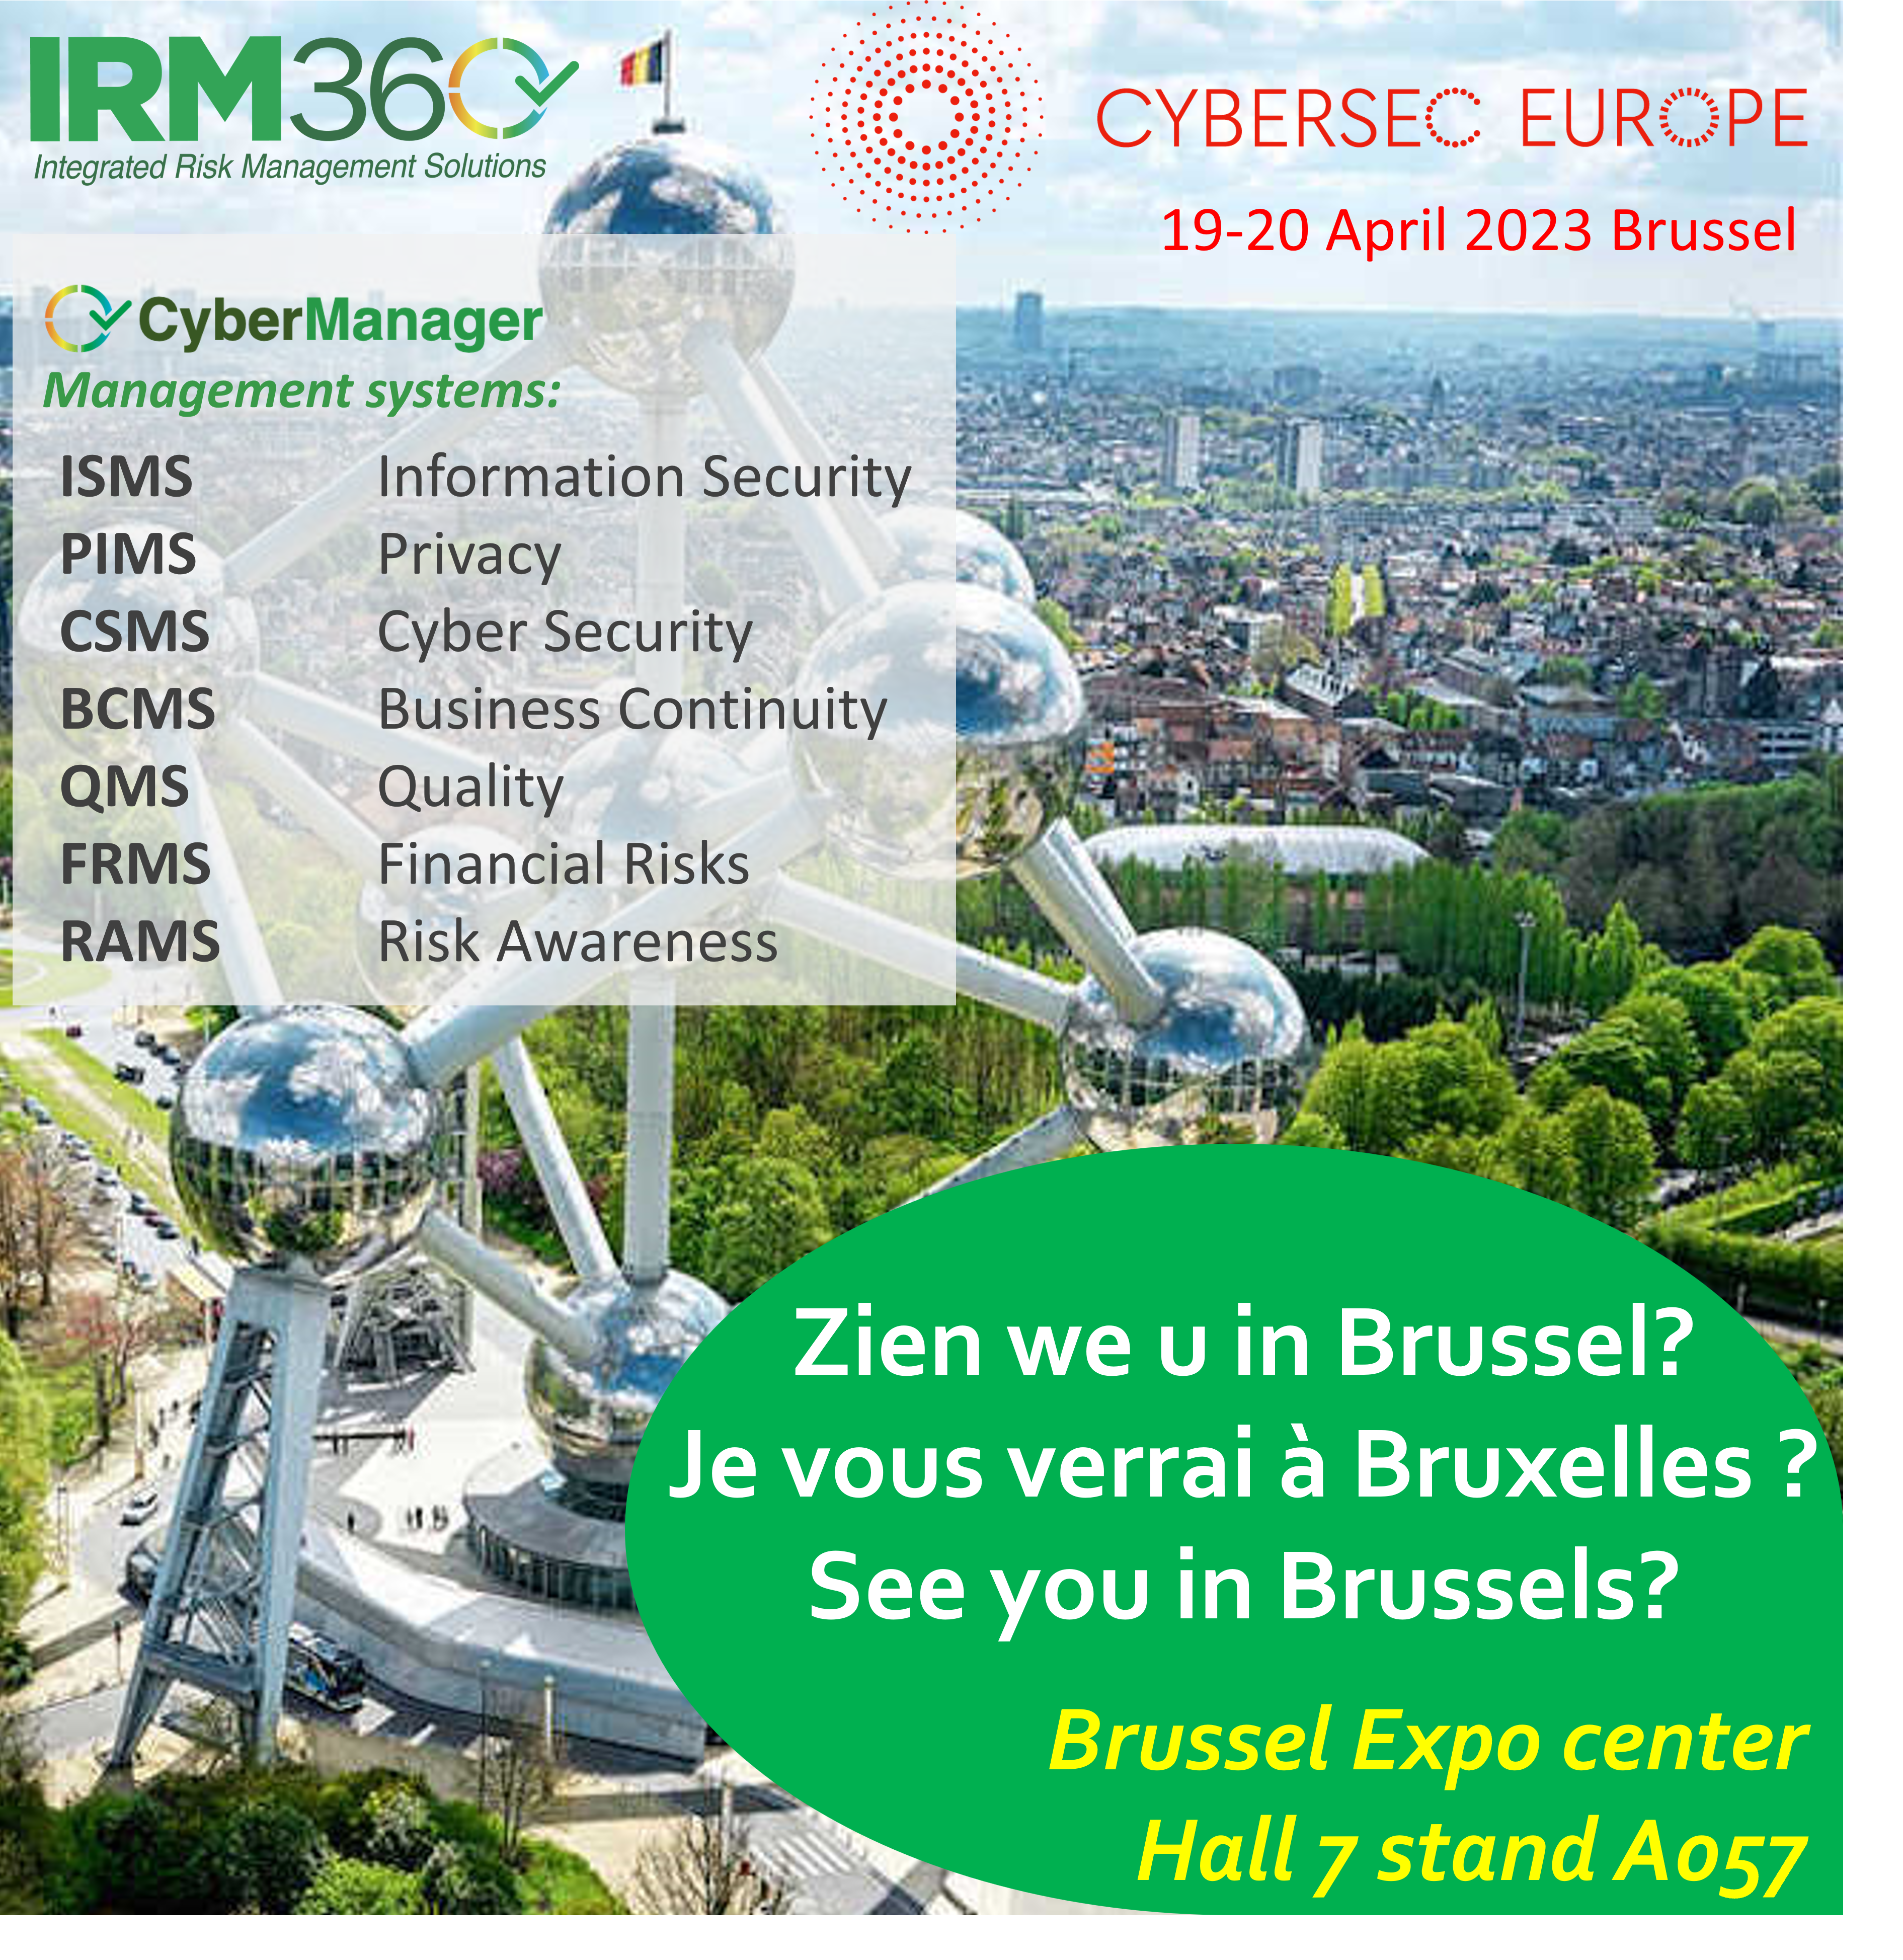 IRM360 Brüksel'deki CyberSec'te sunum yaptı